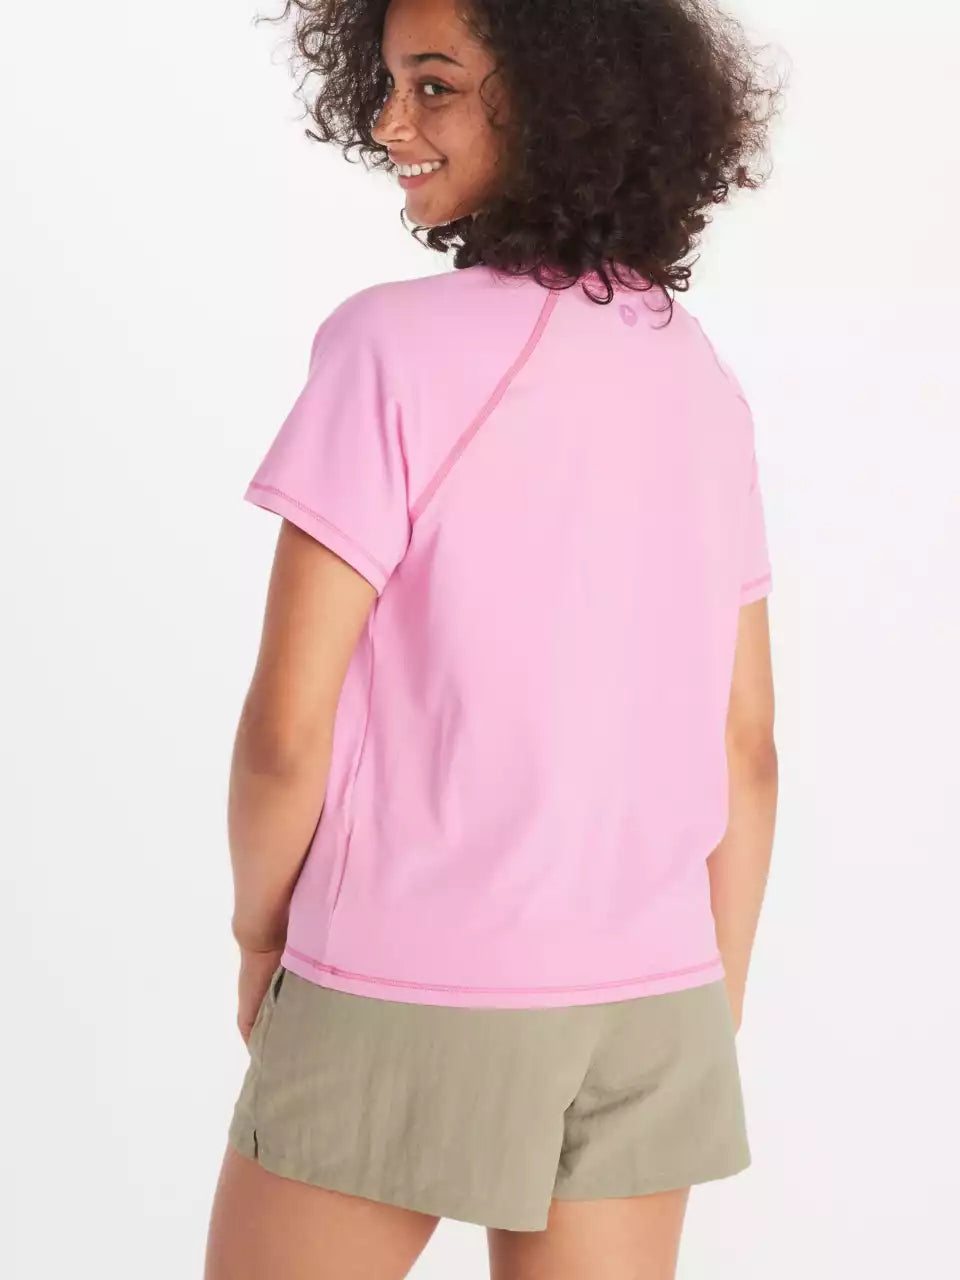 Women's Short Sleeve Tops – BigBearGearNJ